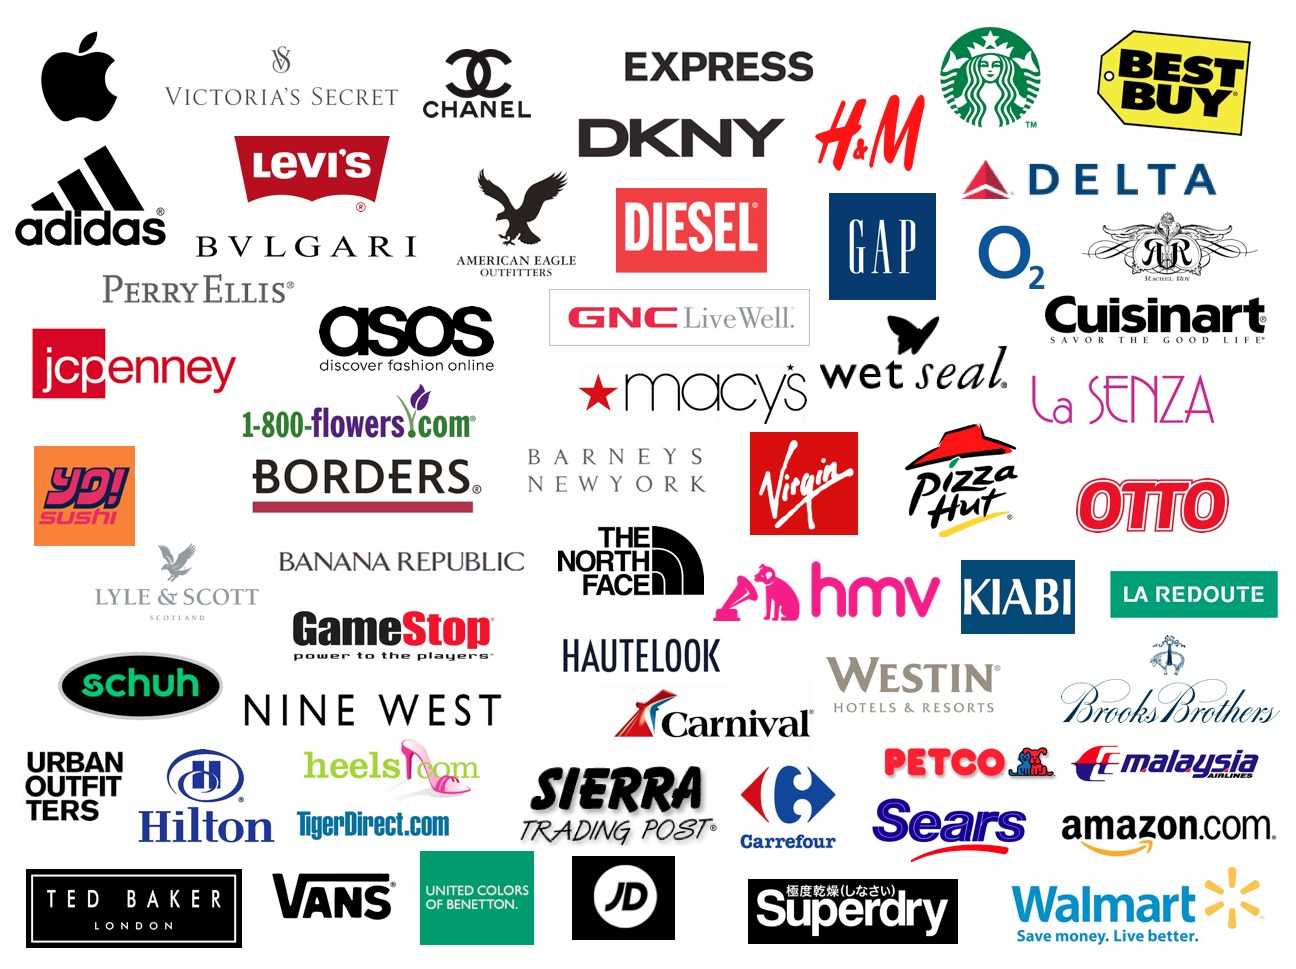 H&m - бренд одежды, обуви, косметики и аксессуаров (швеция)